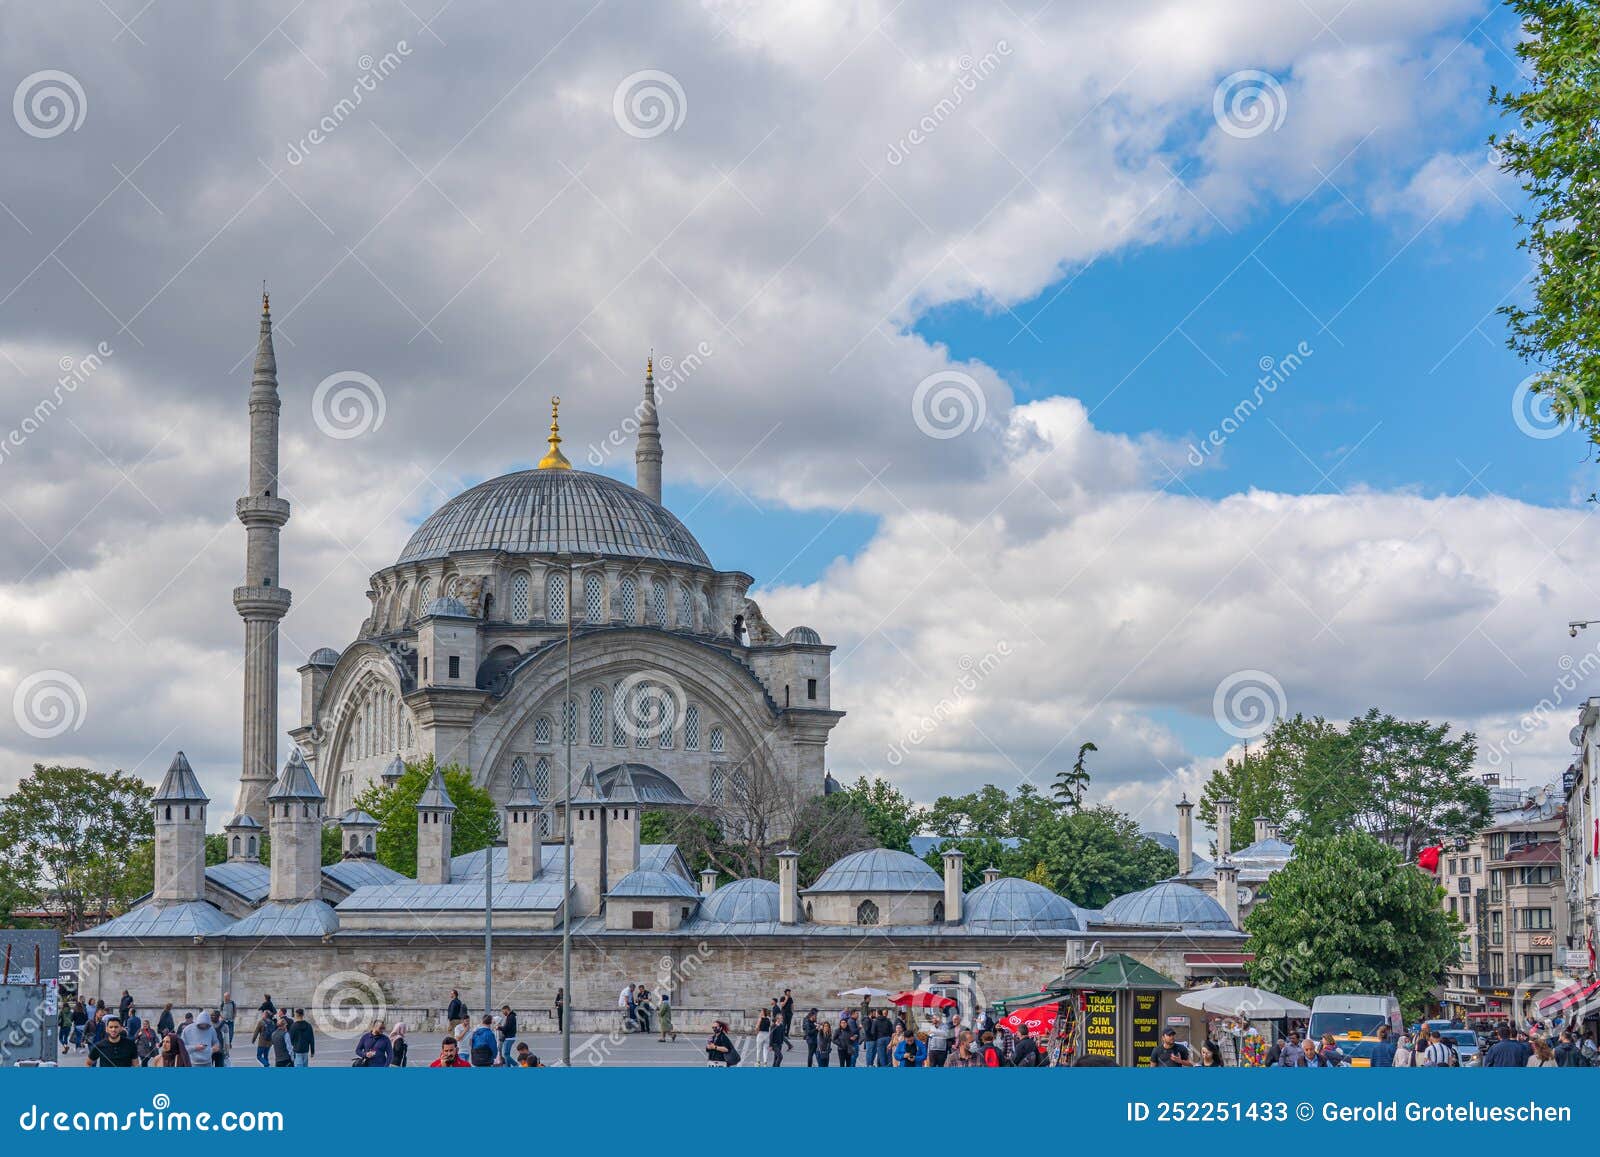 Vue De La Mosquée Nuruosmaniye Une Mosquée Ottomane D'importance  Architecturale Terminée En 1755. Photo stock éditorial - Image du mosquée,  monument: 252251433